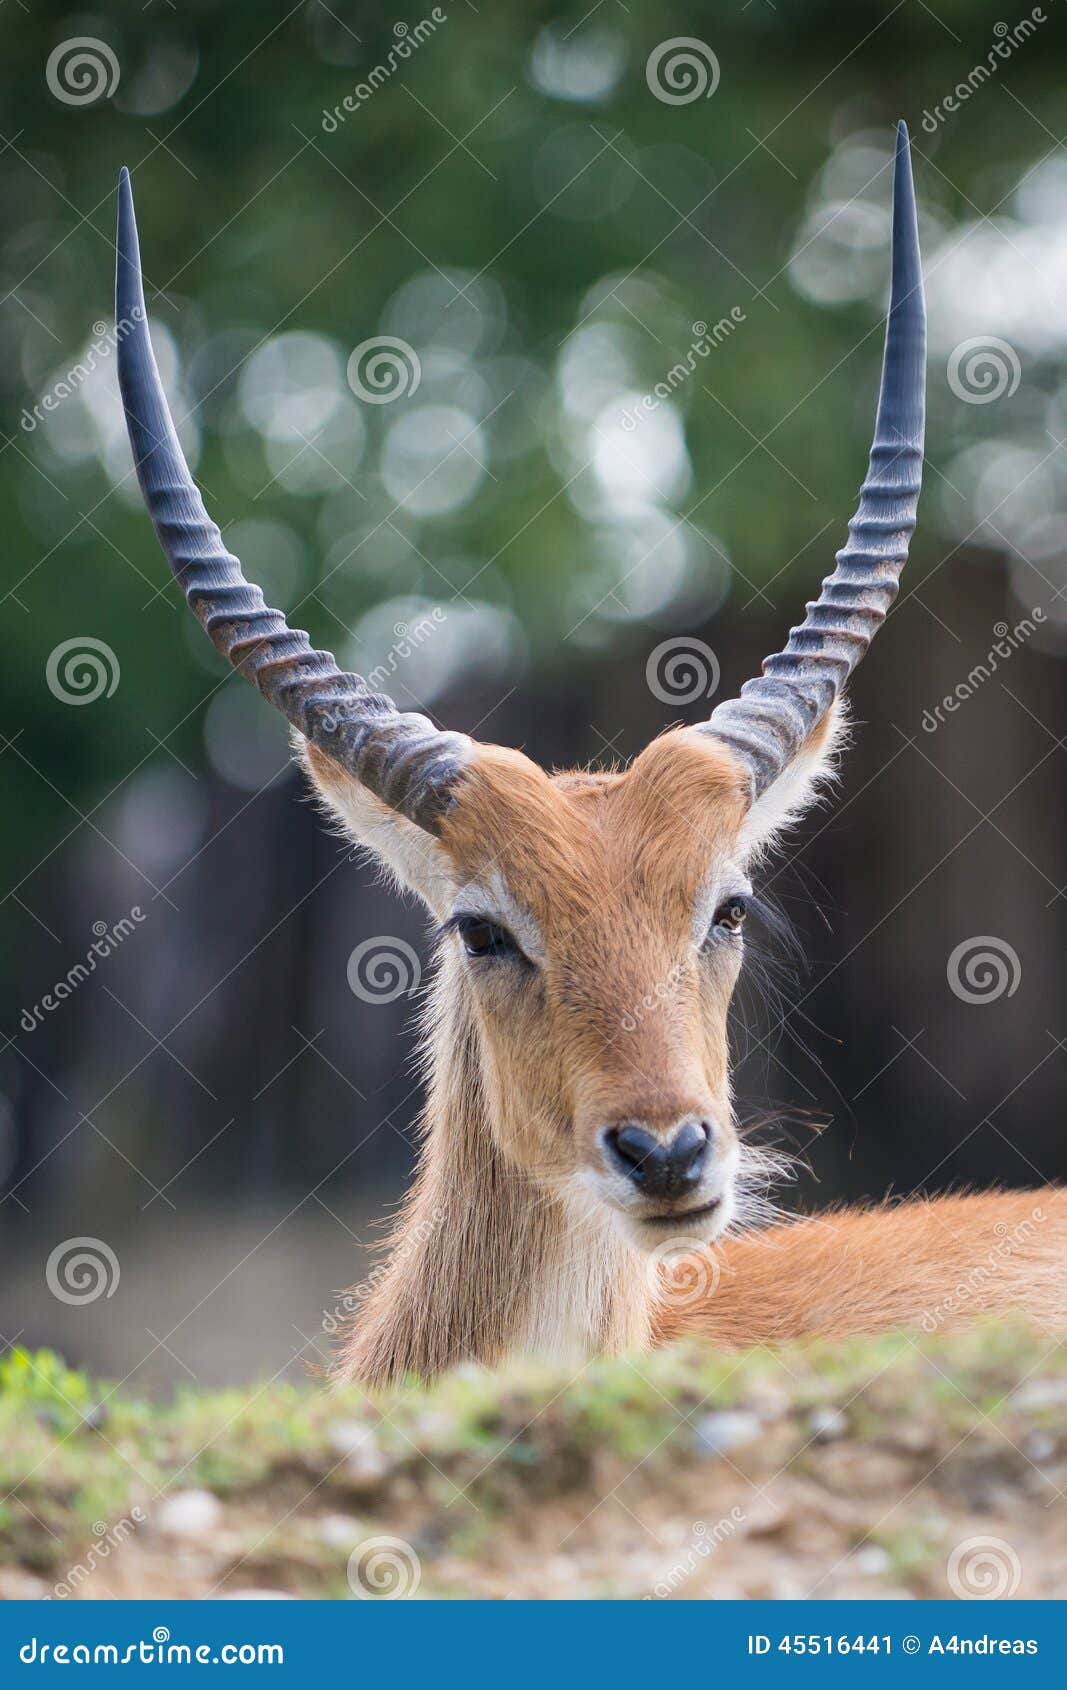 cobo dell'ellisse antilope portrait